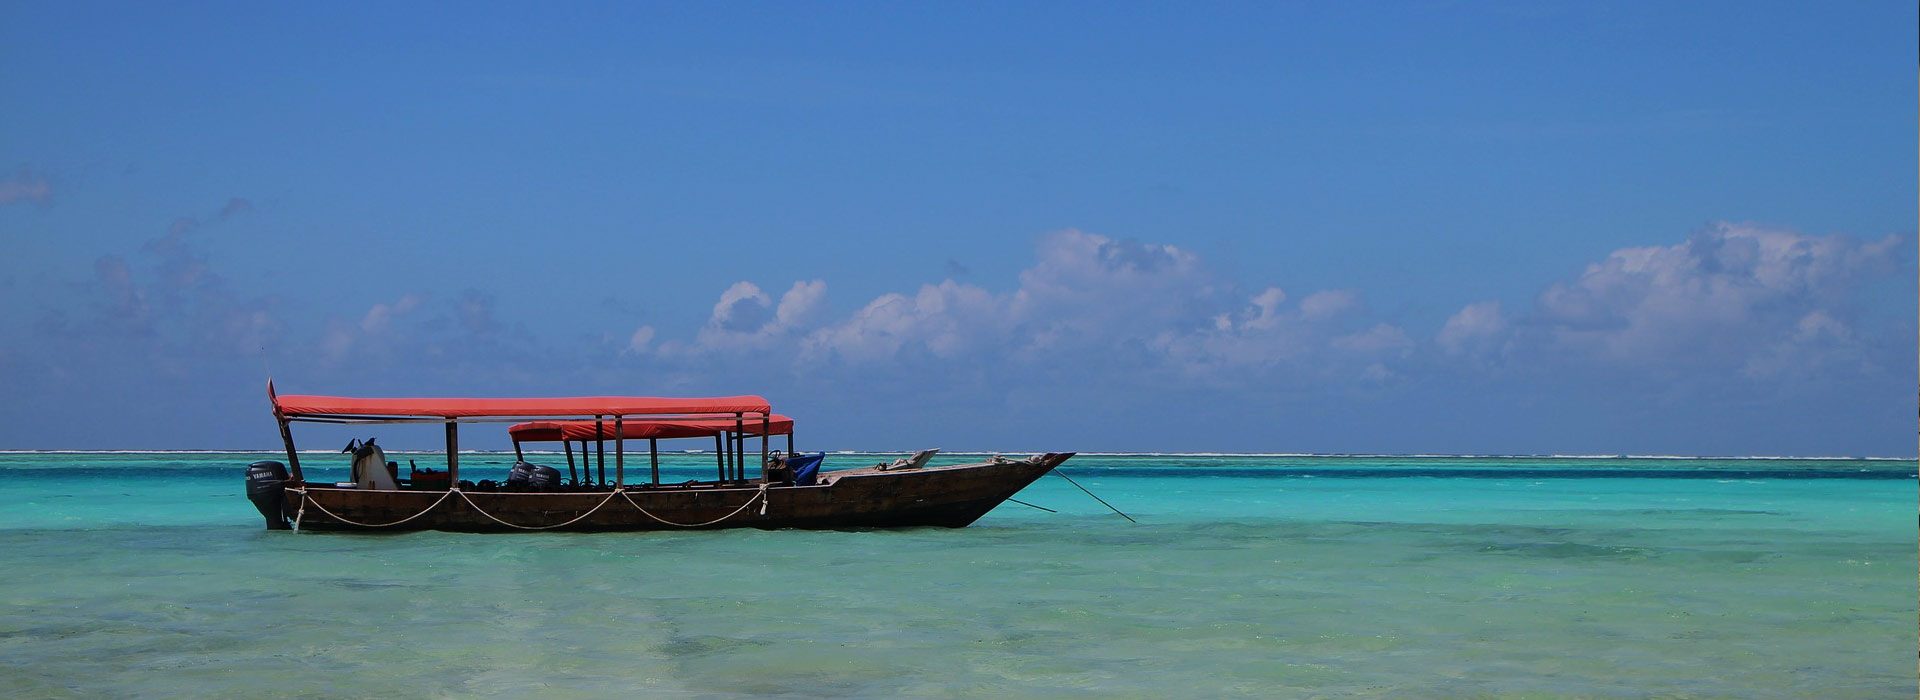 3 Days Tour to Zanzibar Islands